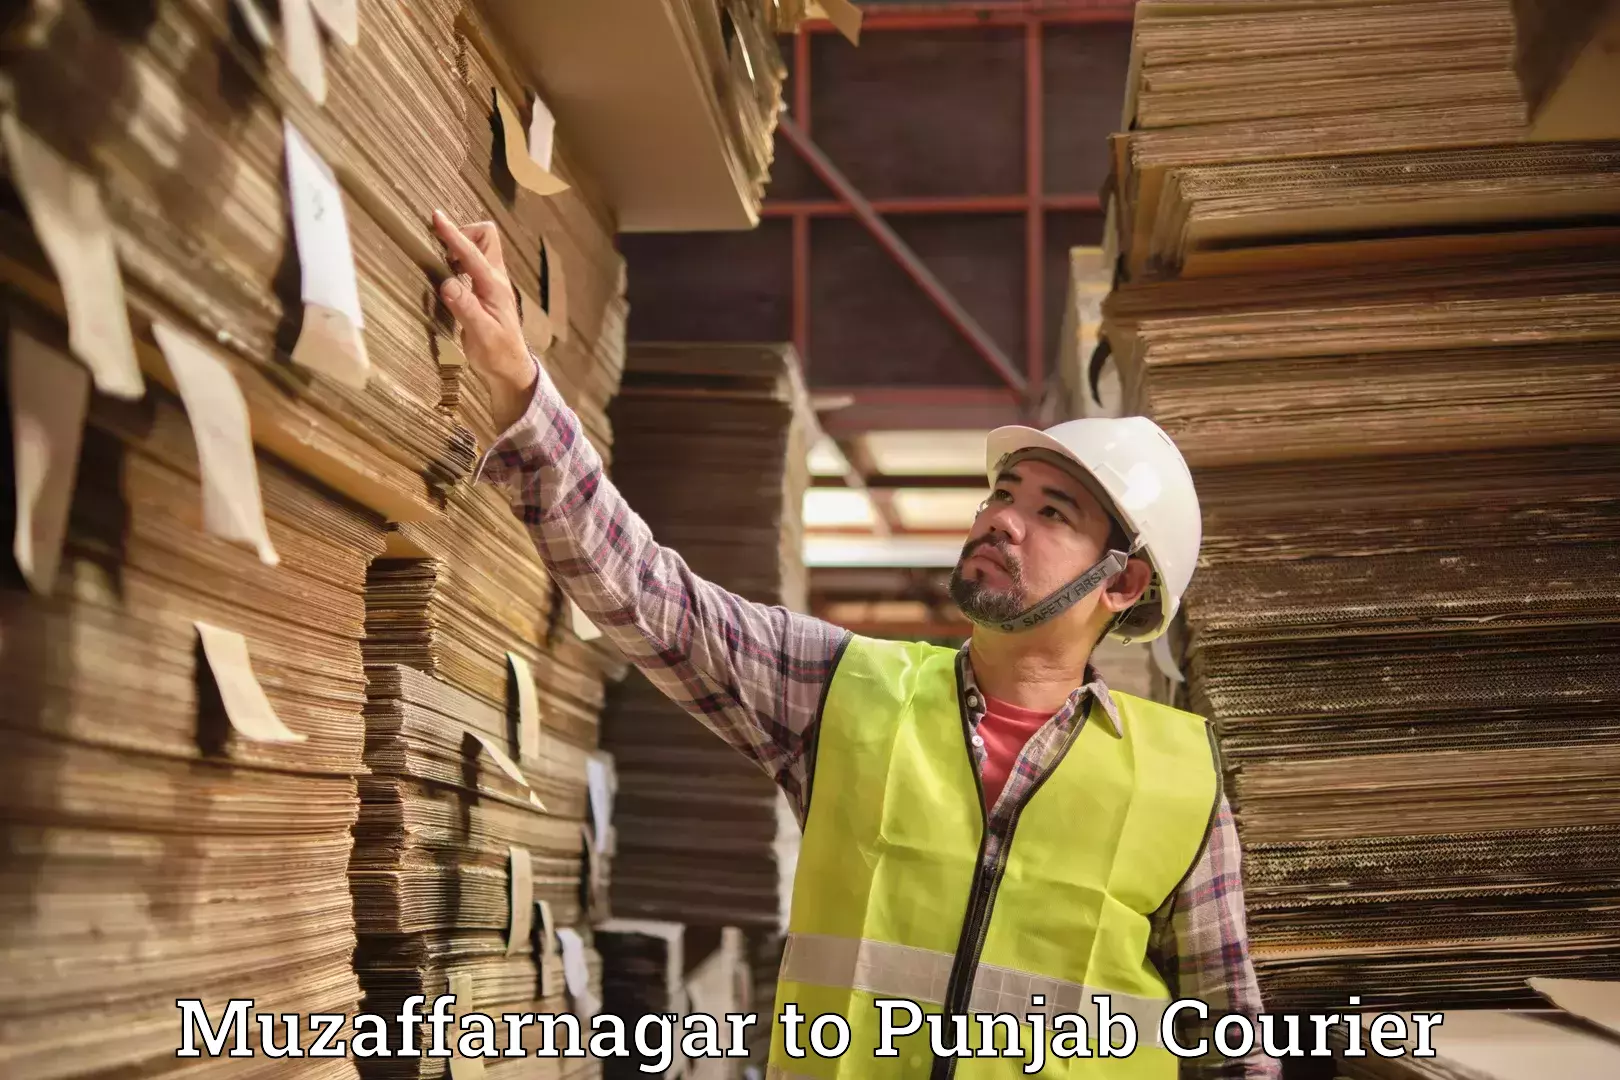 Baggage courier guide Muzaffarnagar to Punjab